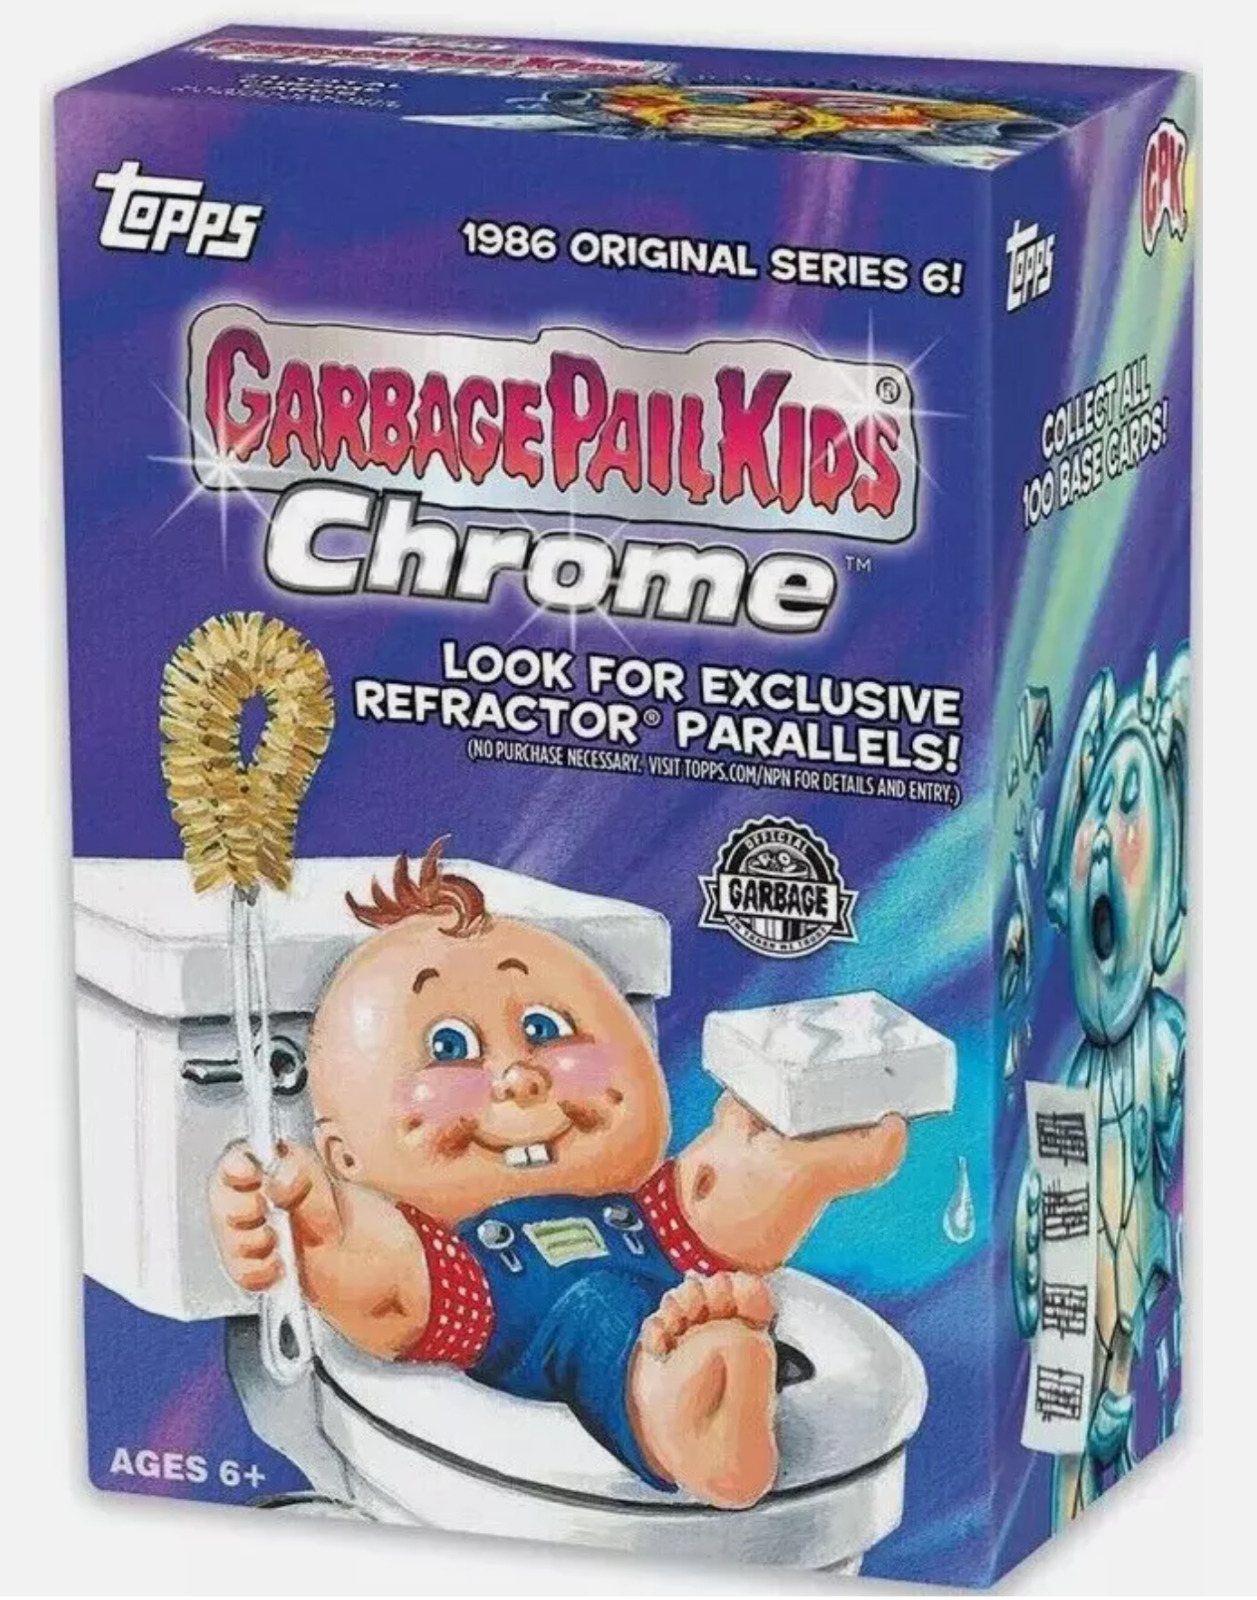 2023 Topps Chrome Garbage Pail Kids Original Series 6 Blaster Box Factory Sealed